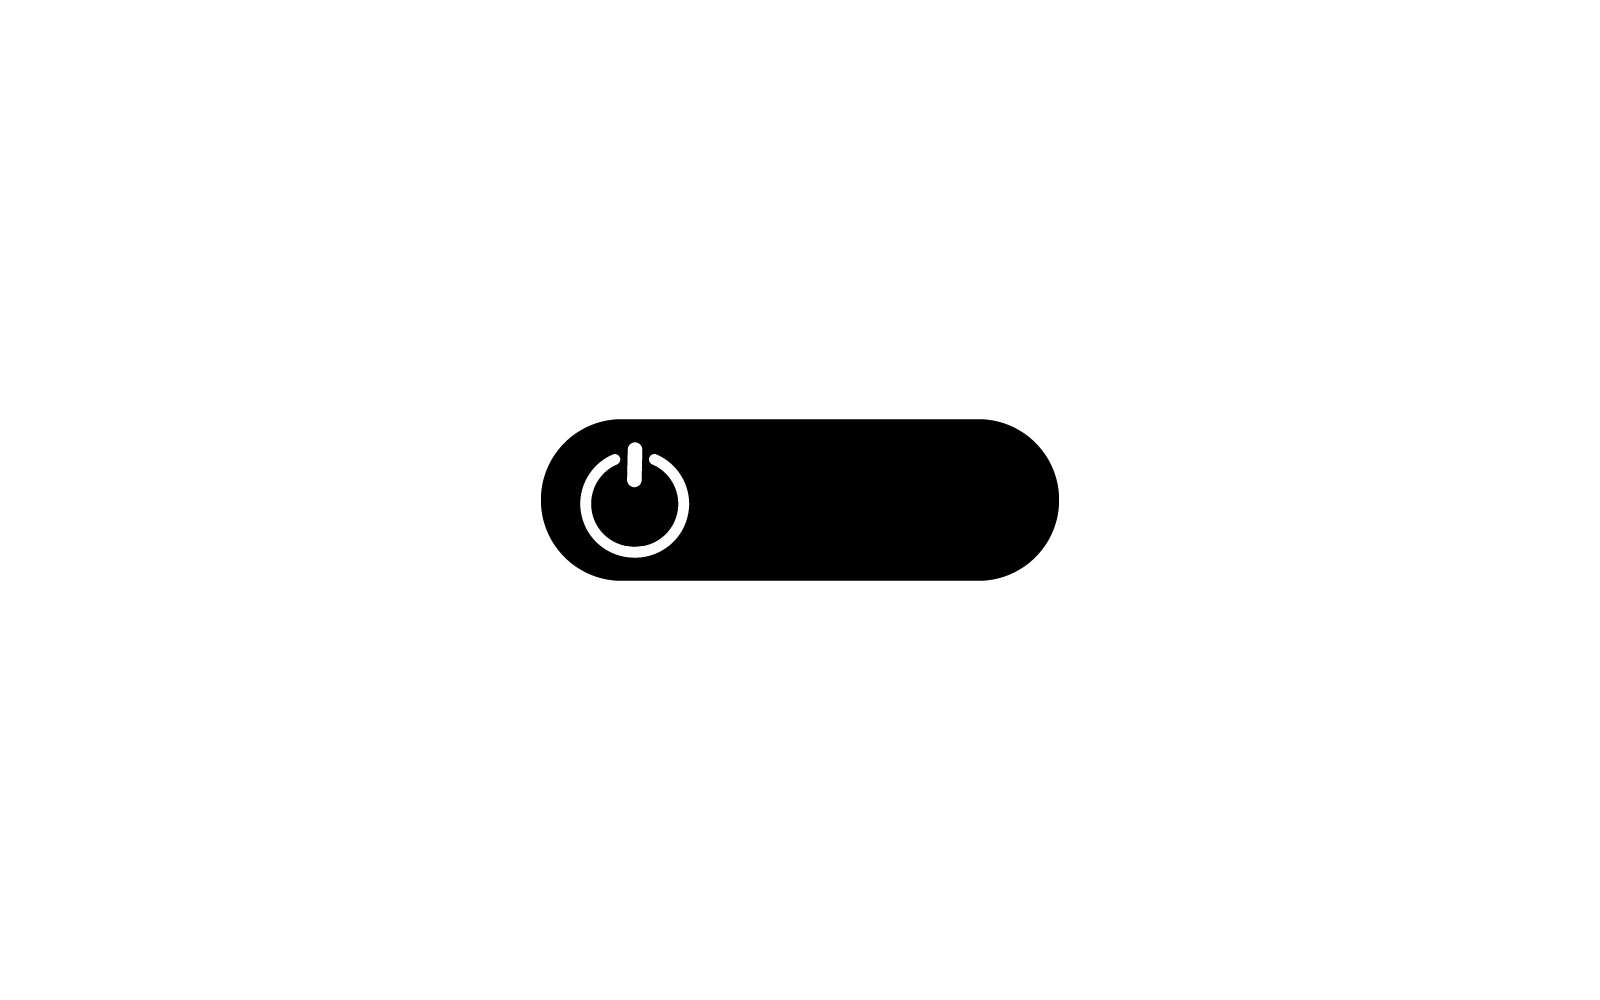 Diseño plano del ejemplo del vector del icono del botón de encendido